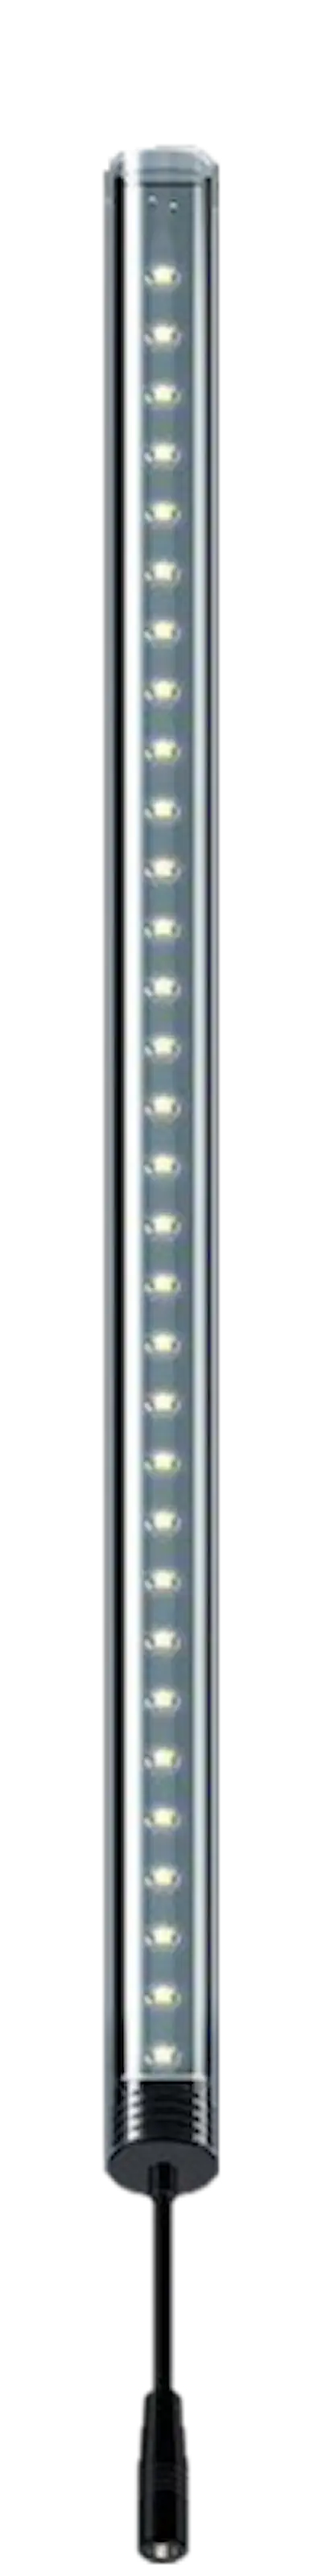 LightWave LED komplett sett, 1140 - 1220 mm